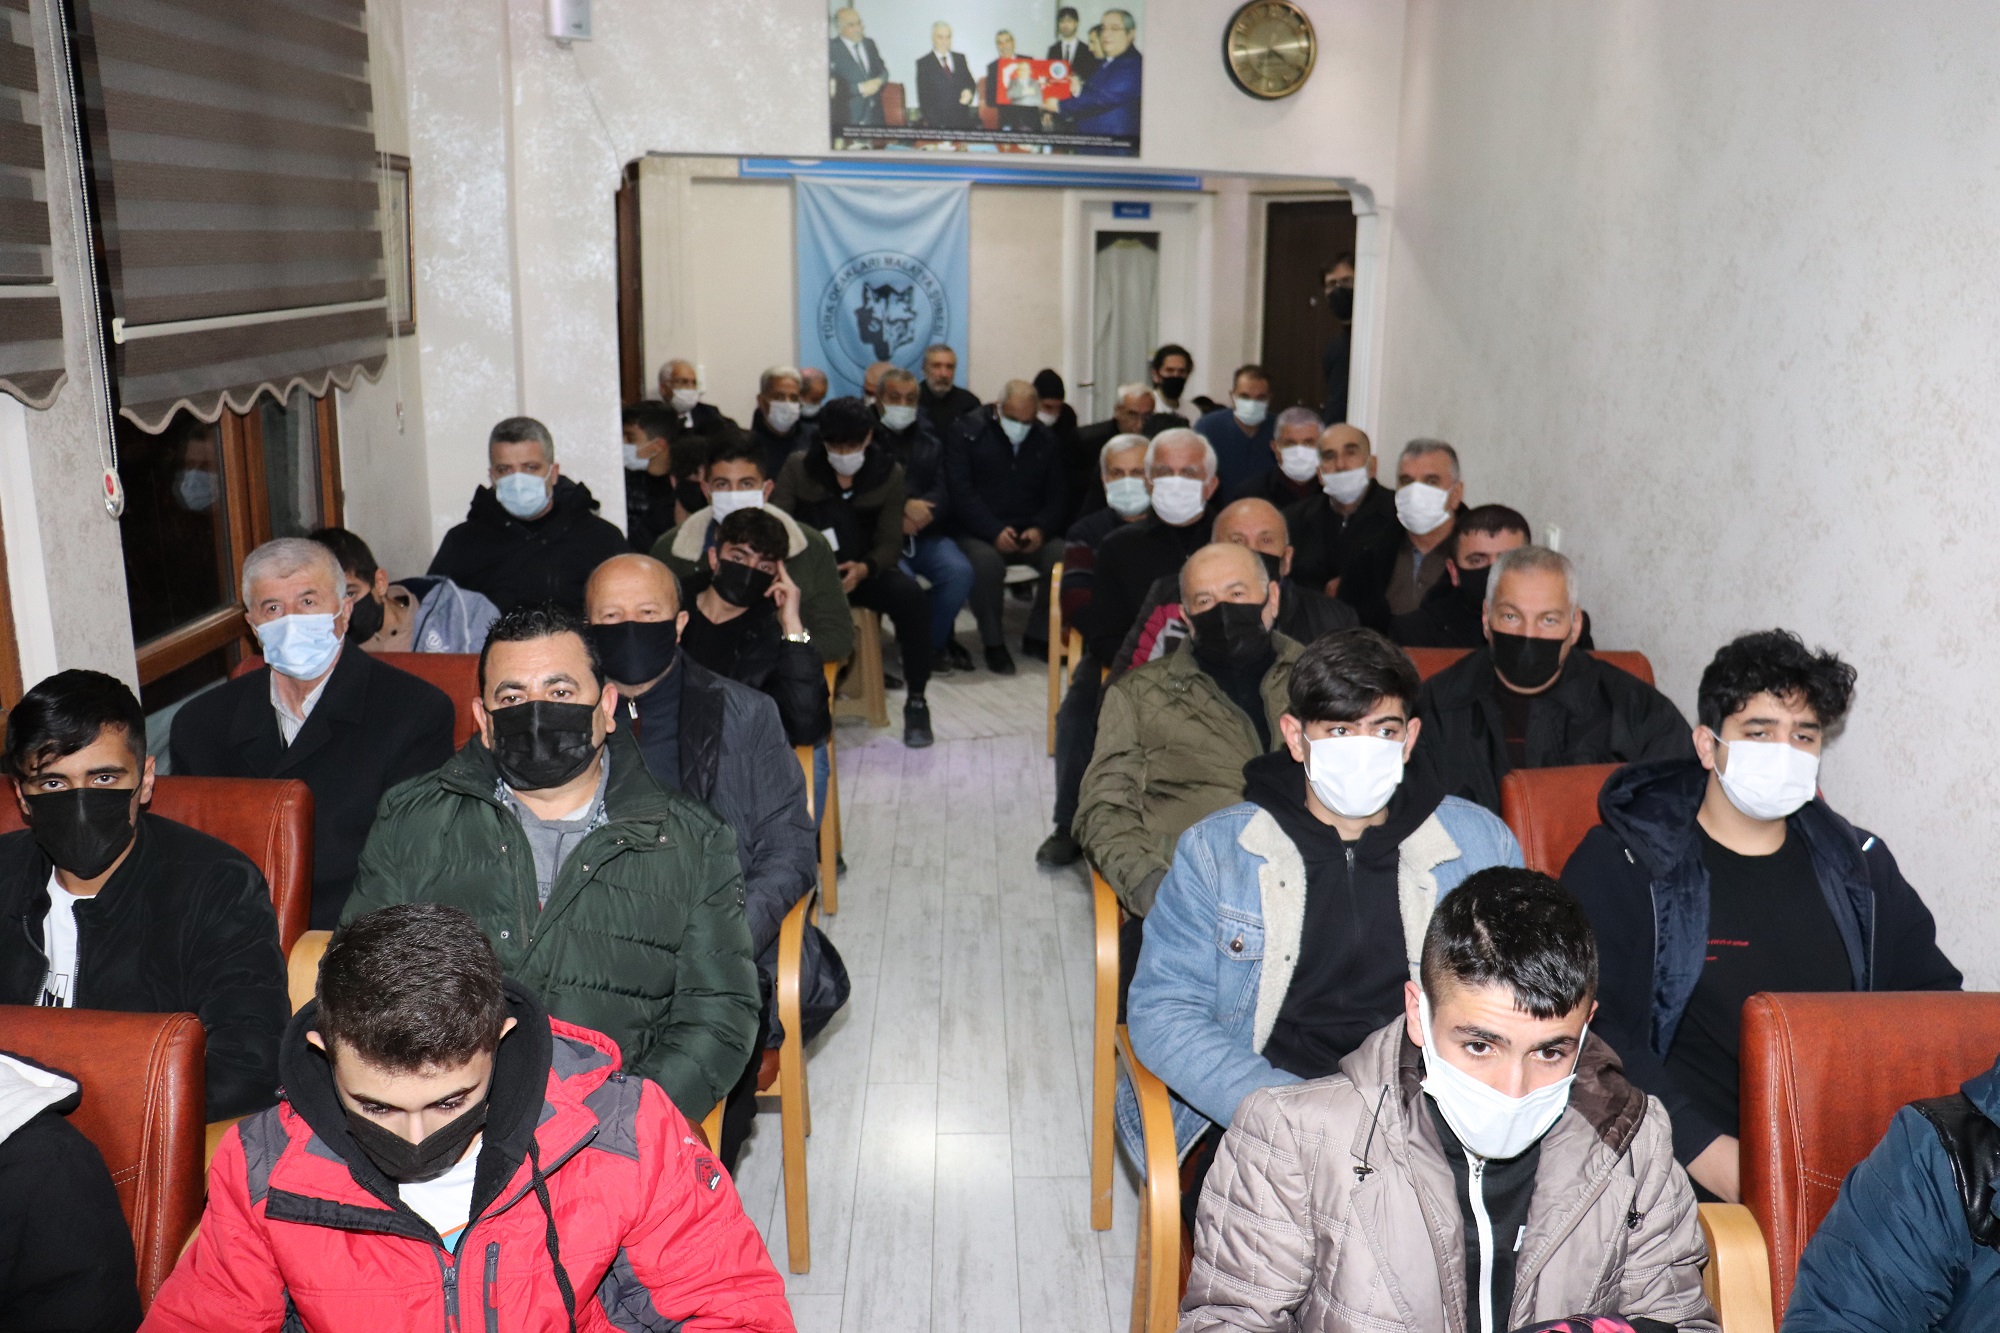 Türk Ocakları Malatya Şubesi tarafından geleneksel hale getirilen Ocakbaşı Sohbetleri kapsamında Doç. Dr. Hamdi Onay’ın konuşmacı olarak katıldığı “Deizm ve Açmazları” konulu konferans düzenlendi.